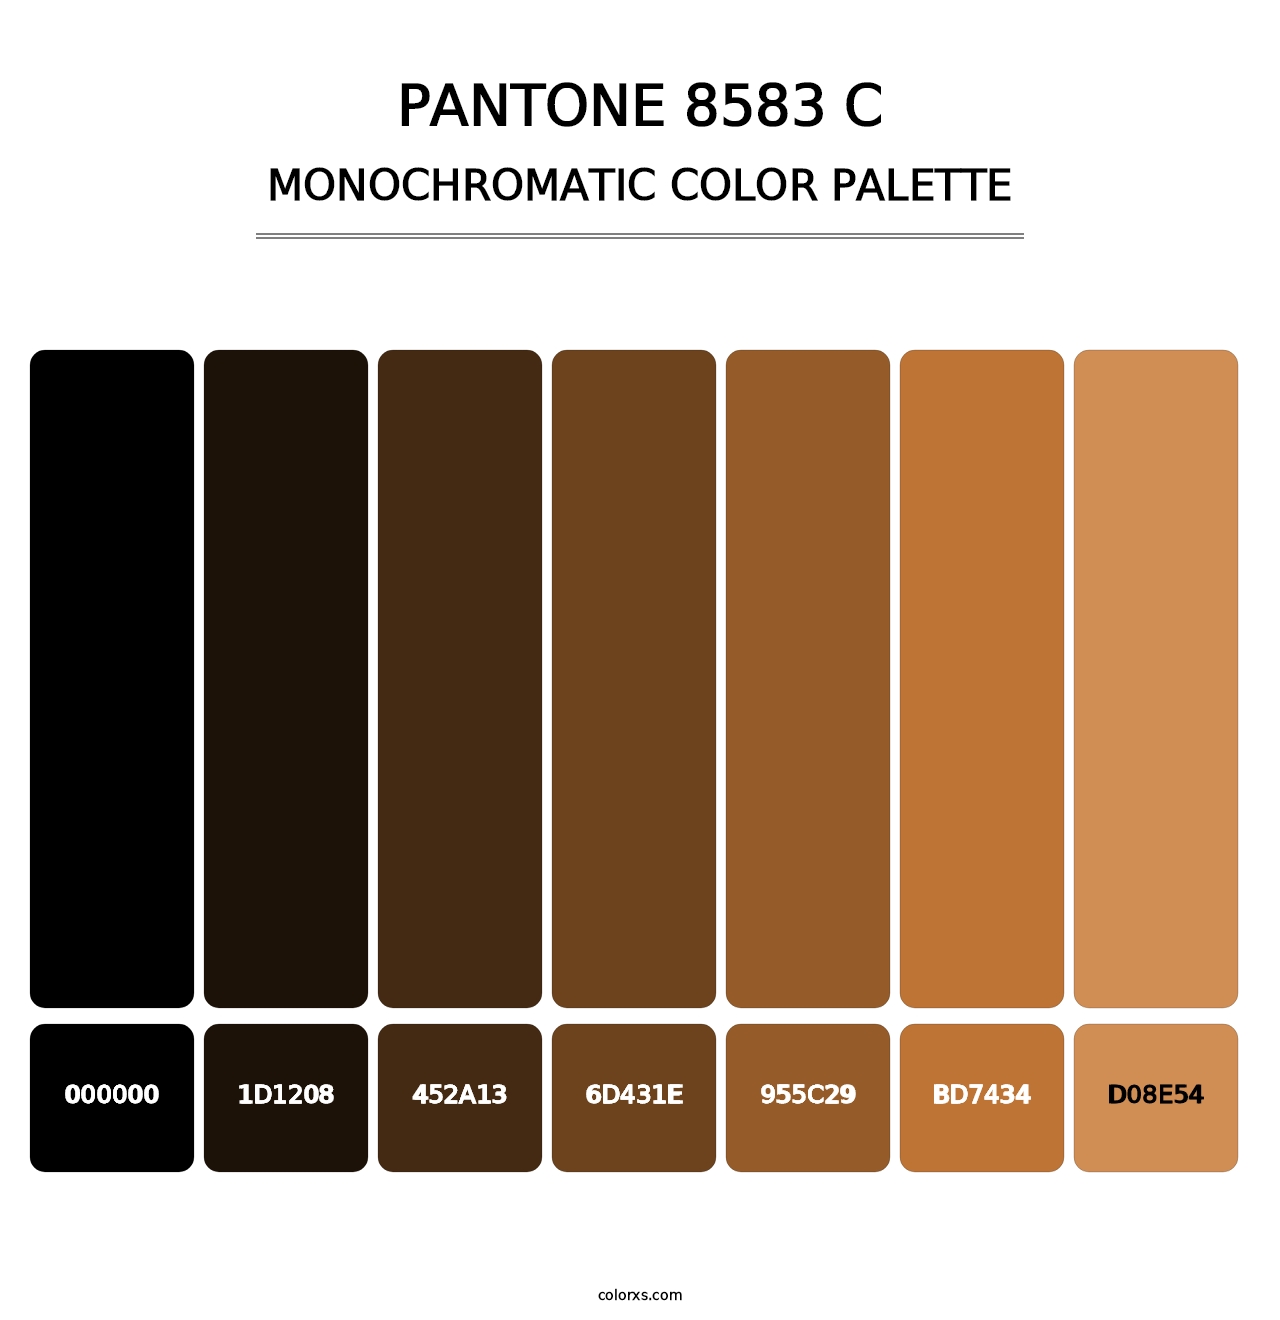 PANTONE 8583 C - Monochromatic Color Palette